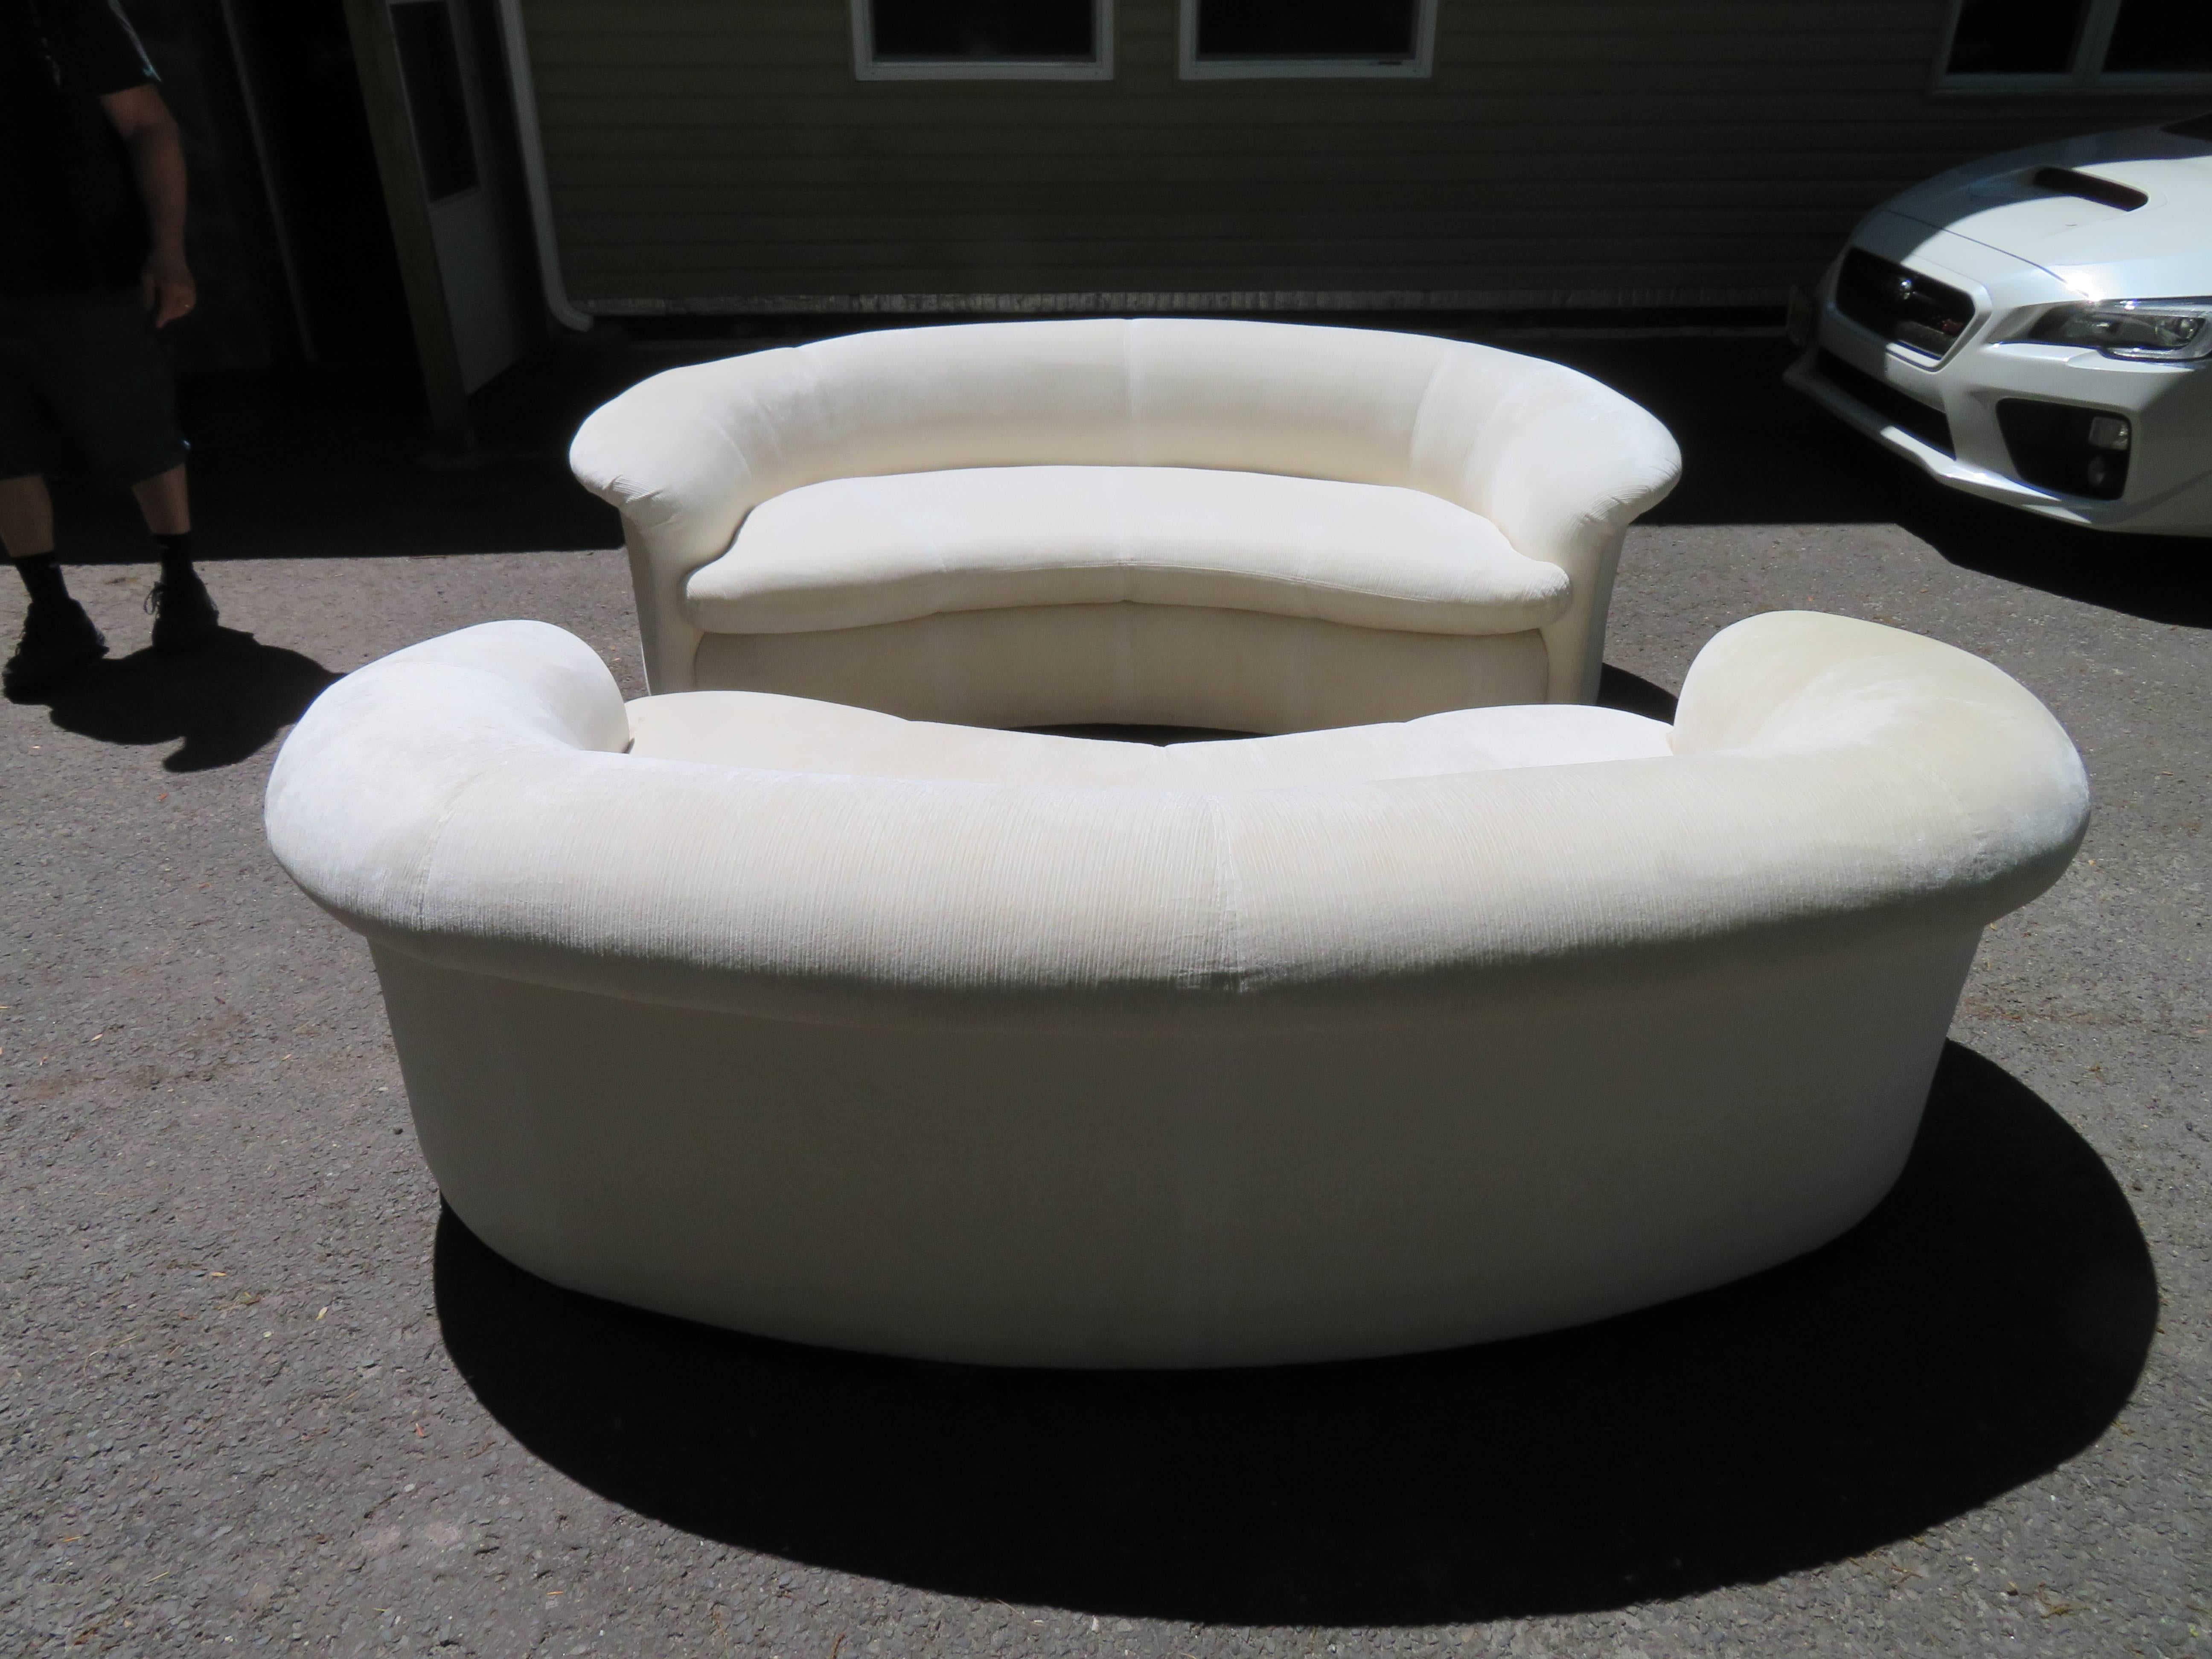 Schönes Paar geschwungener nierenförmiger Sofas im Stil von Weiman-Vladimir Kagan. Dieses Paar sind die perfekte Größe bei 28 